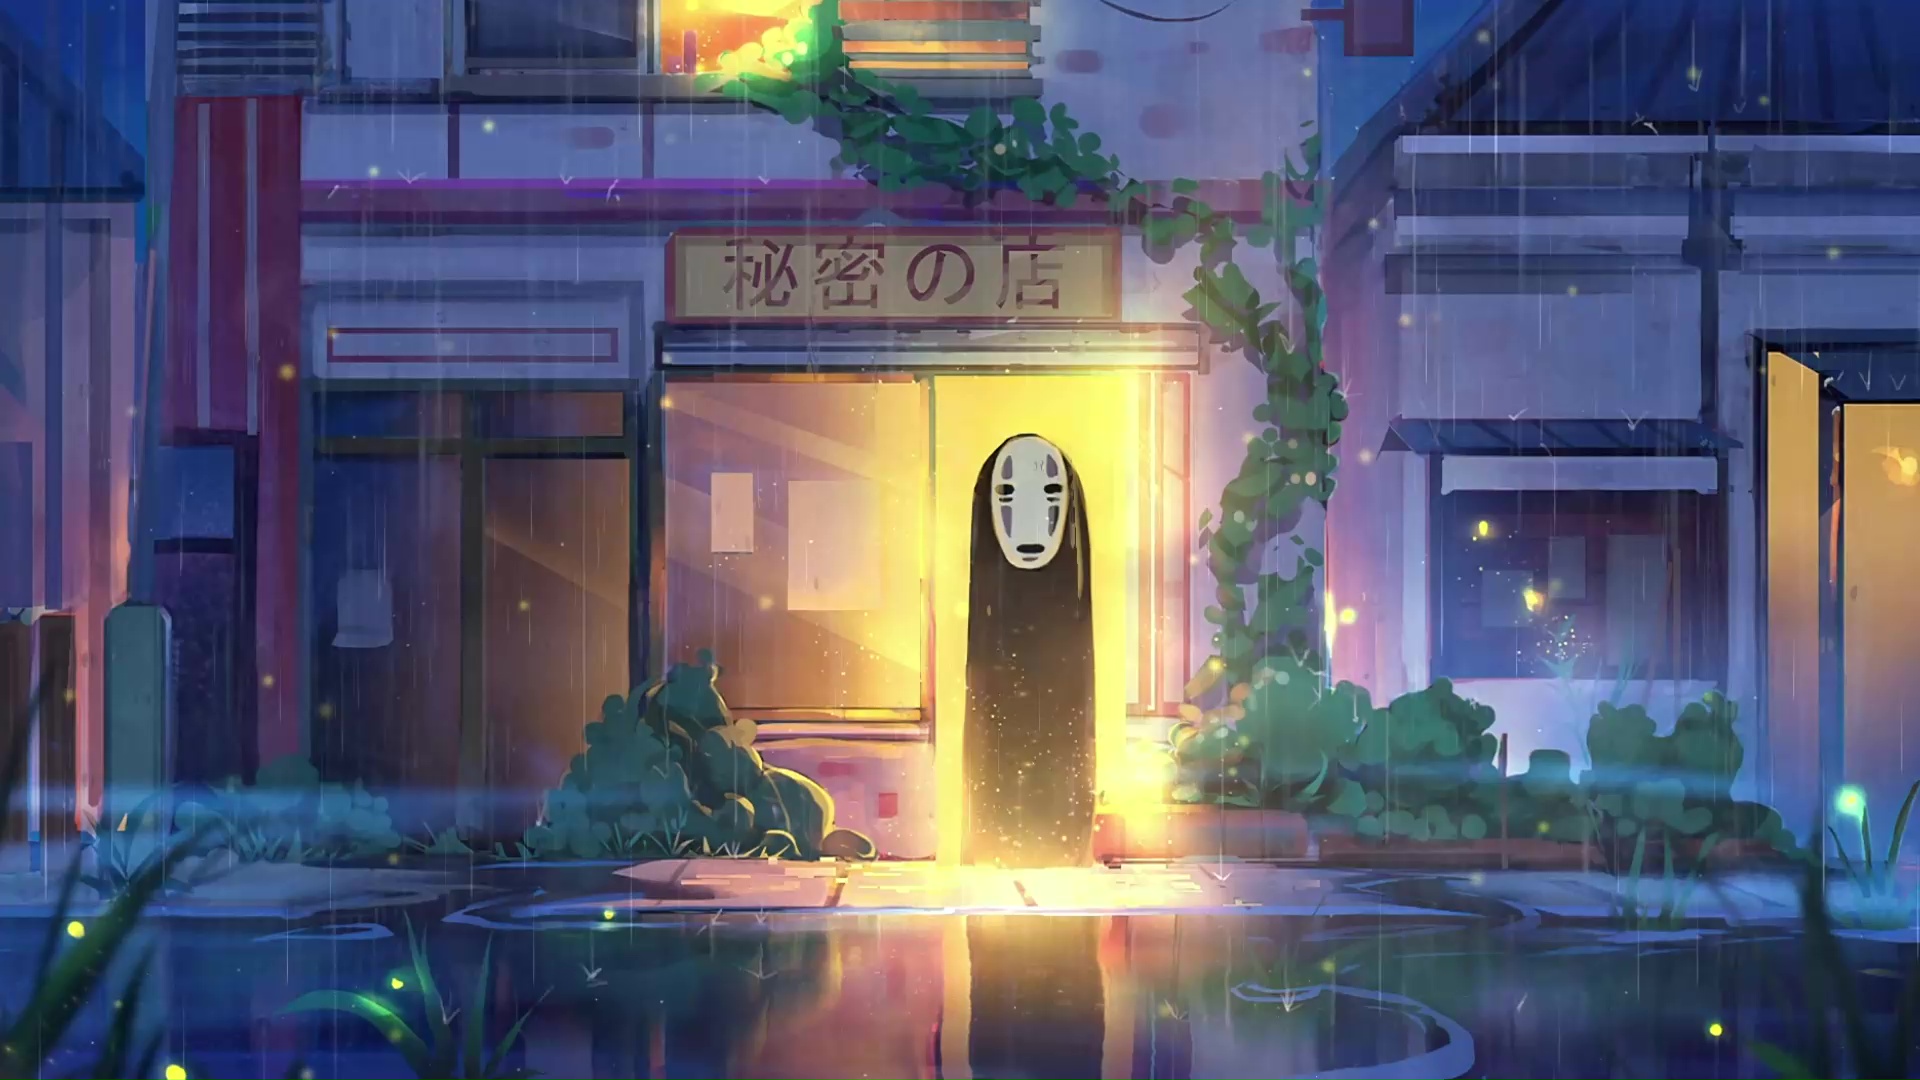 Spirited Away là một bộ phim hoạt hình xứ Nhật rất nổi tiếng, và giờ đây, bạn có thể chiêm ngưỡng hình nền động của No-Face trong phim này. Kiểu dáng và màu sắc độc đáo chắc chắn sẽ gây ấn tượng trong lòng bạn. Đừng bỏ lỡ cơ hội này, hãy xem ngay hình nền động này.